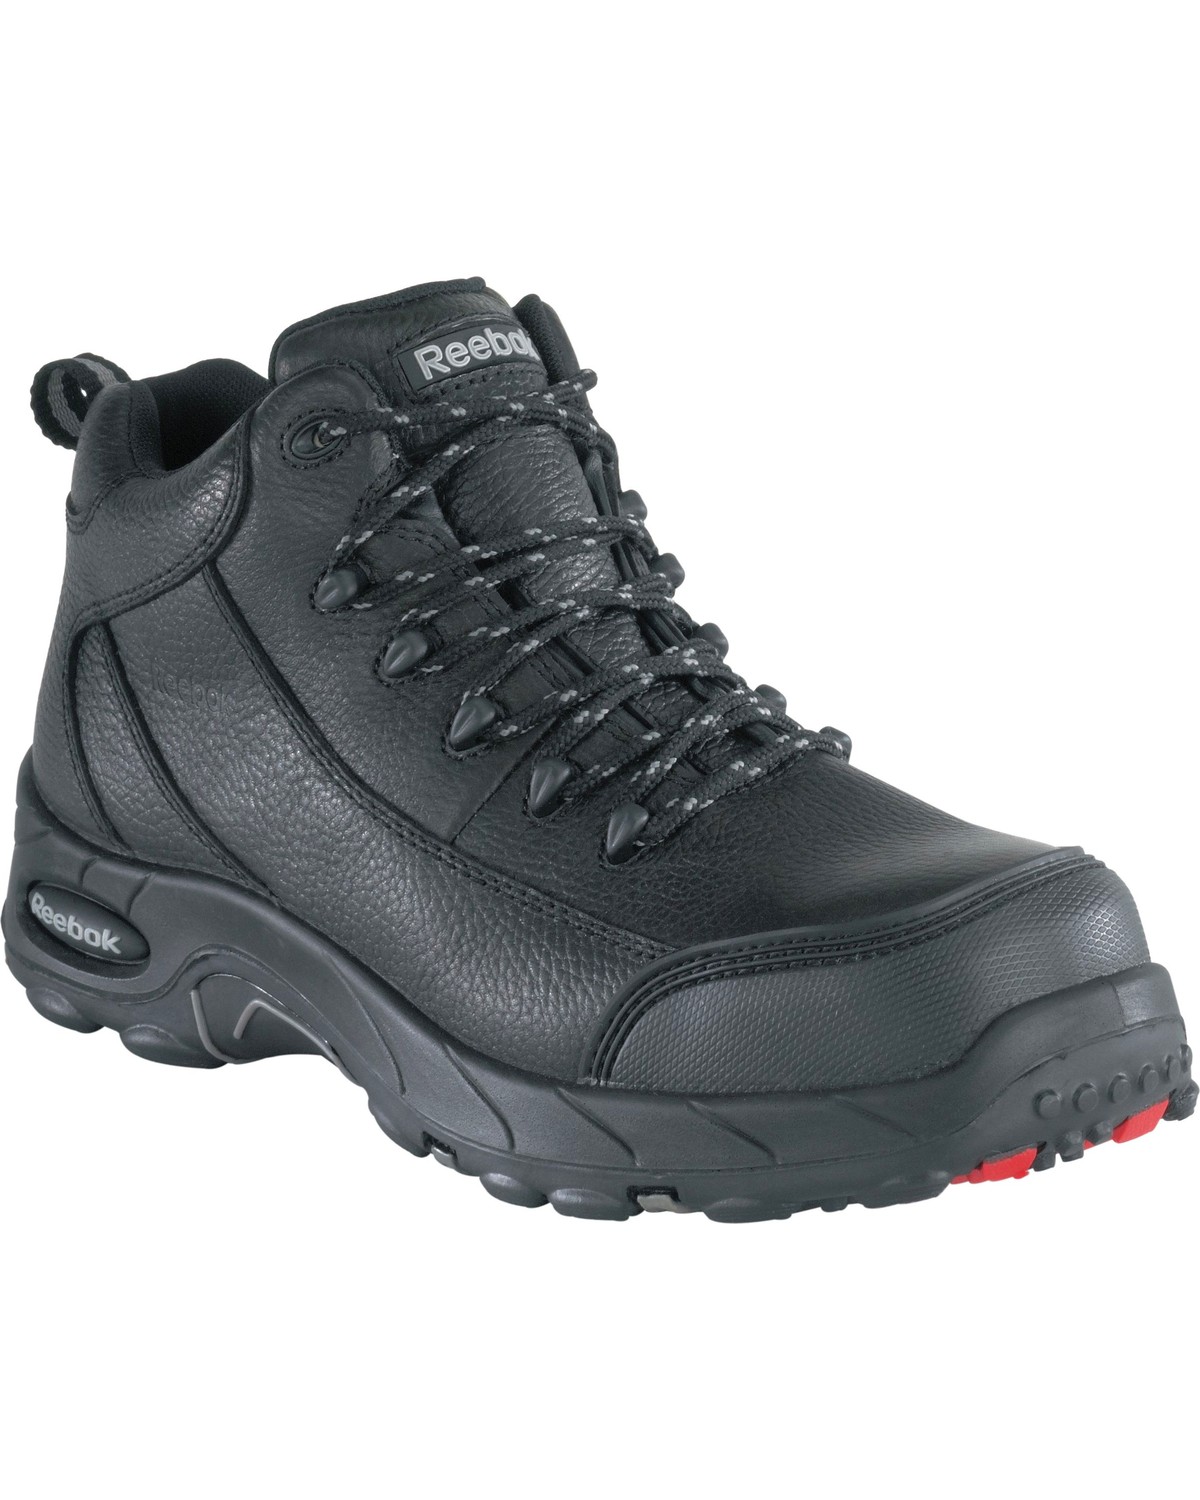 Reebok Men's Tiahawk Sport Hiker Waterproof Work Boots - Composite Toe